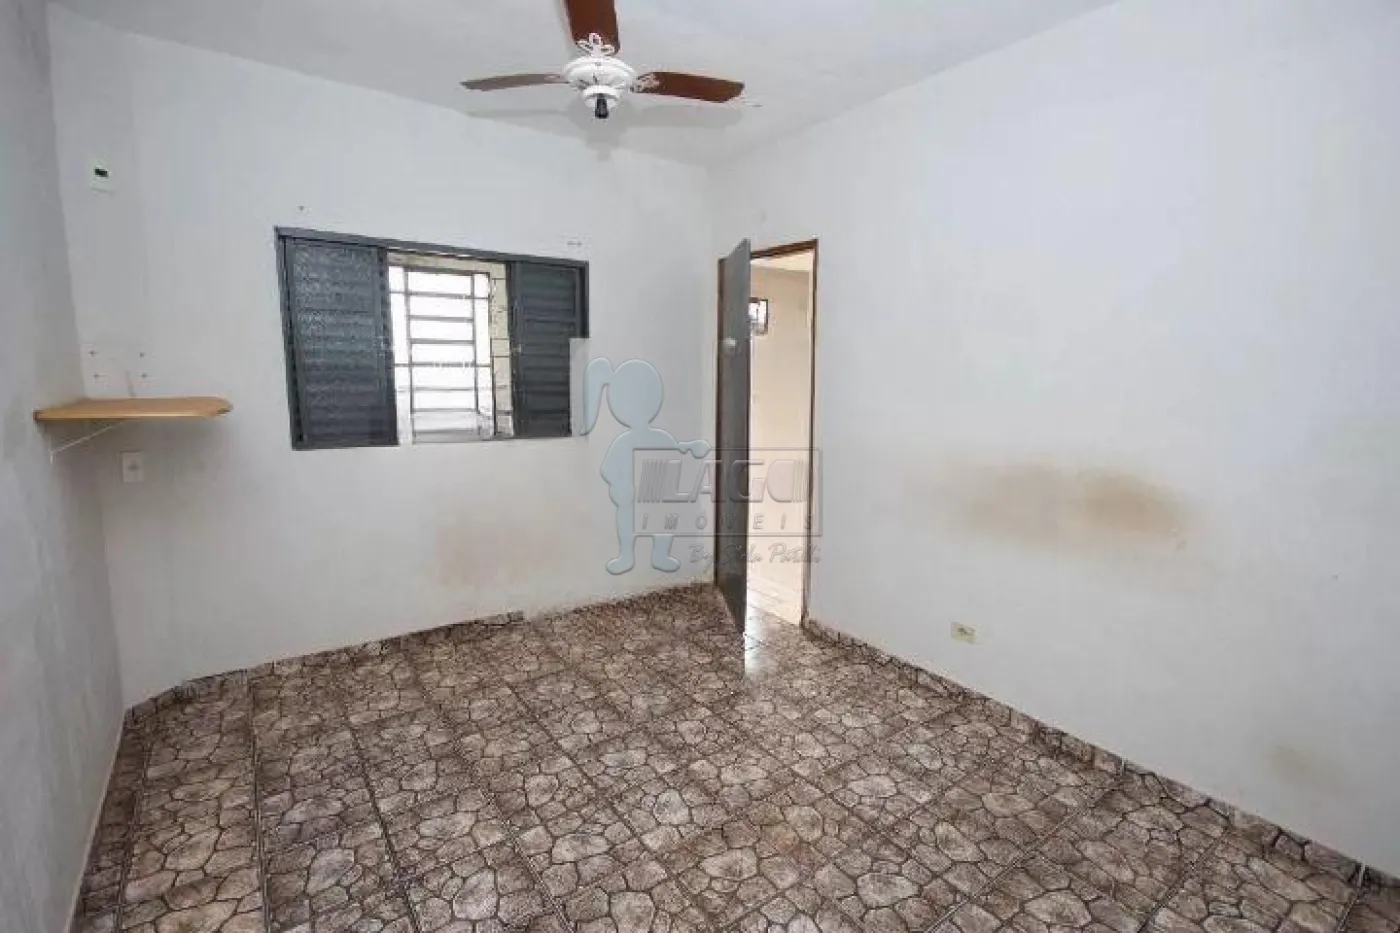 Alugar Casa / Padrão em Ribeirão Preto R$ 2.500,00 - Foto 10